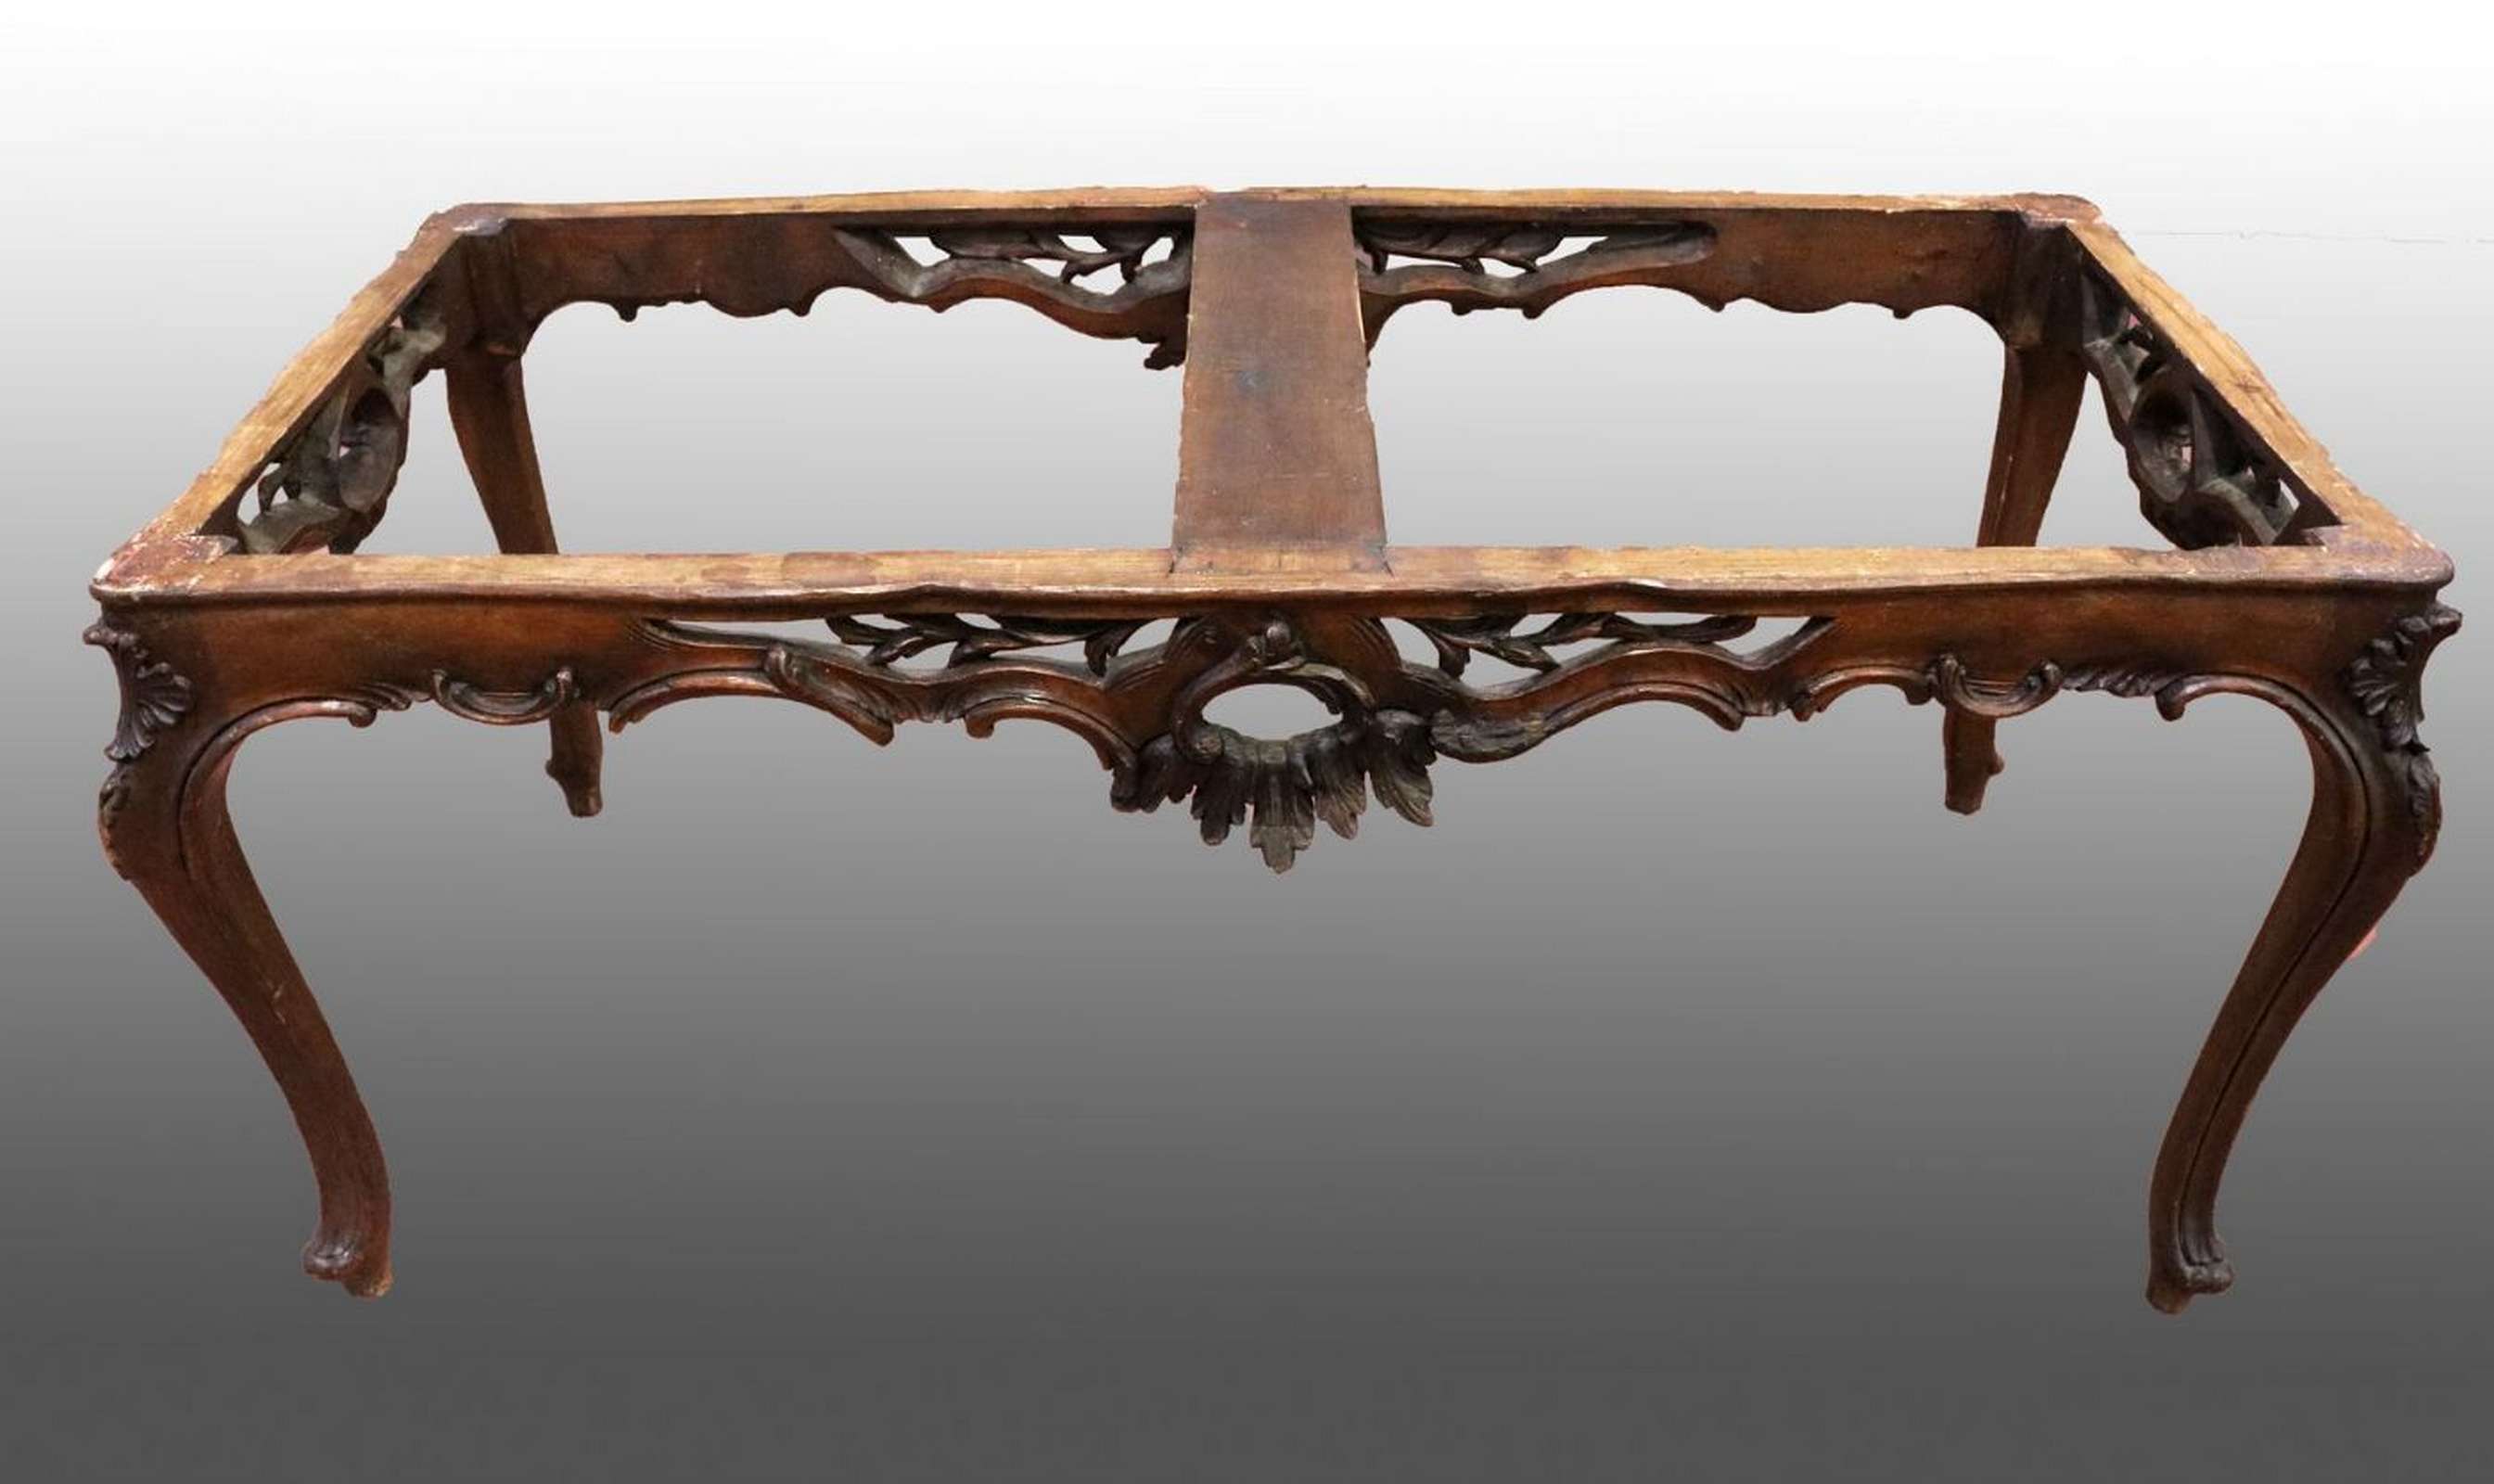 Antica base da tavolo in legno. Epoca primi 1900. - Tavoli in legno - Tavoli e complementi - Prodotti - Antichità Fiorillo